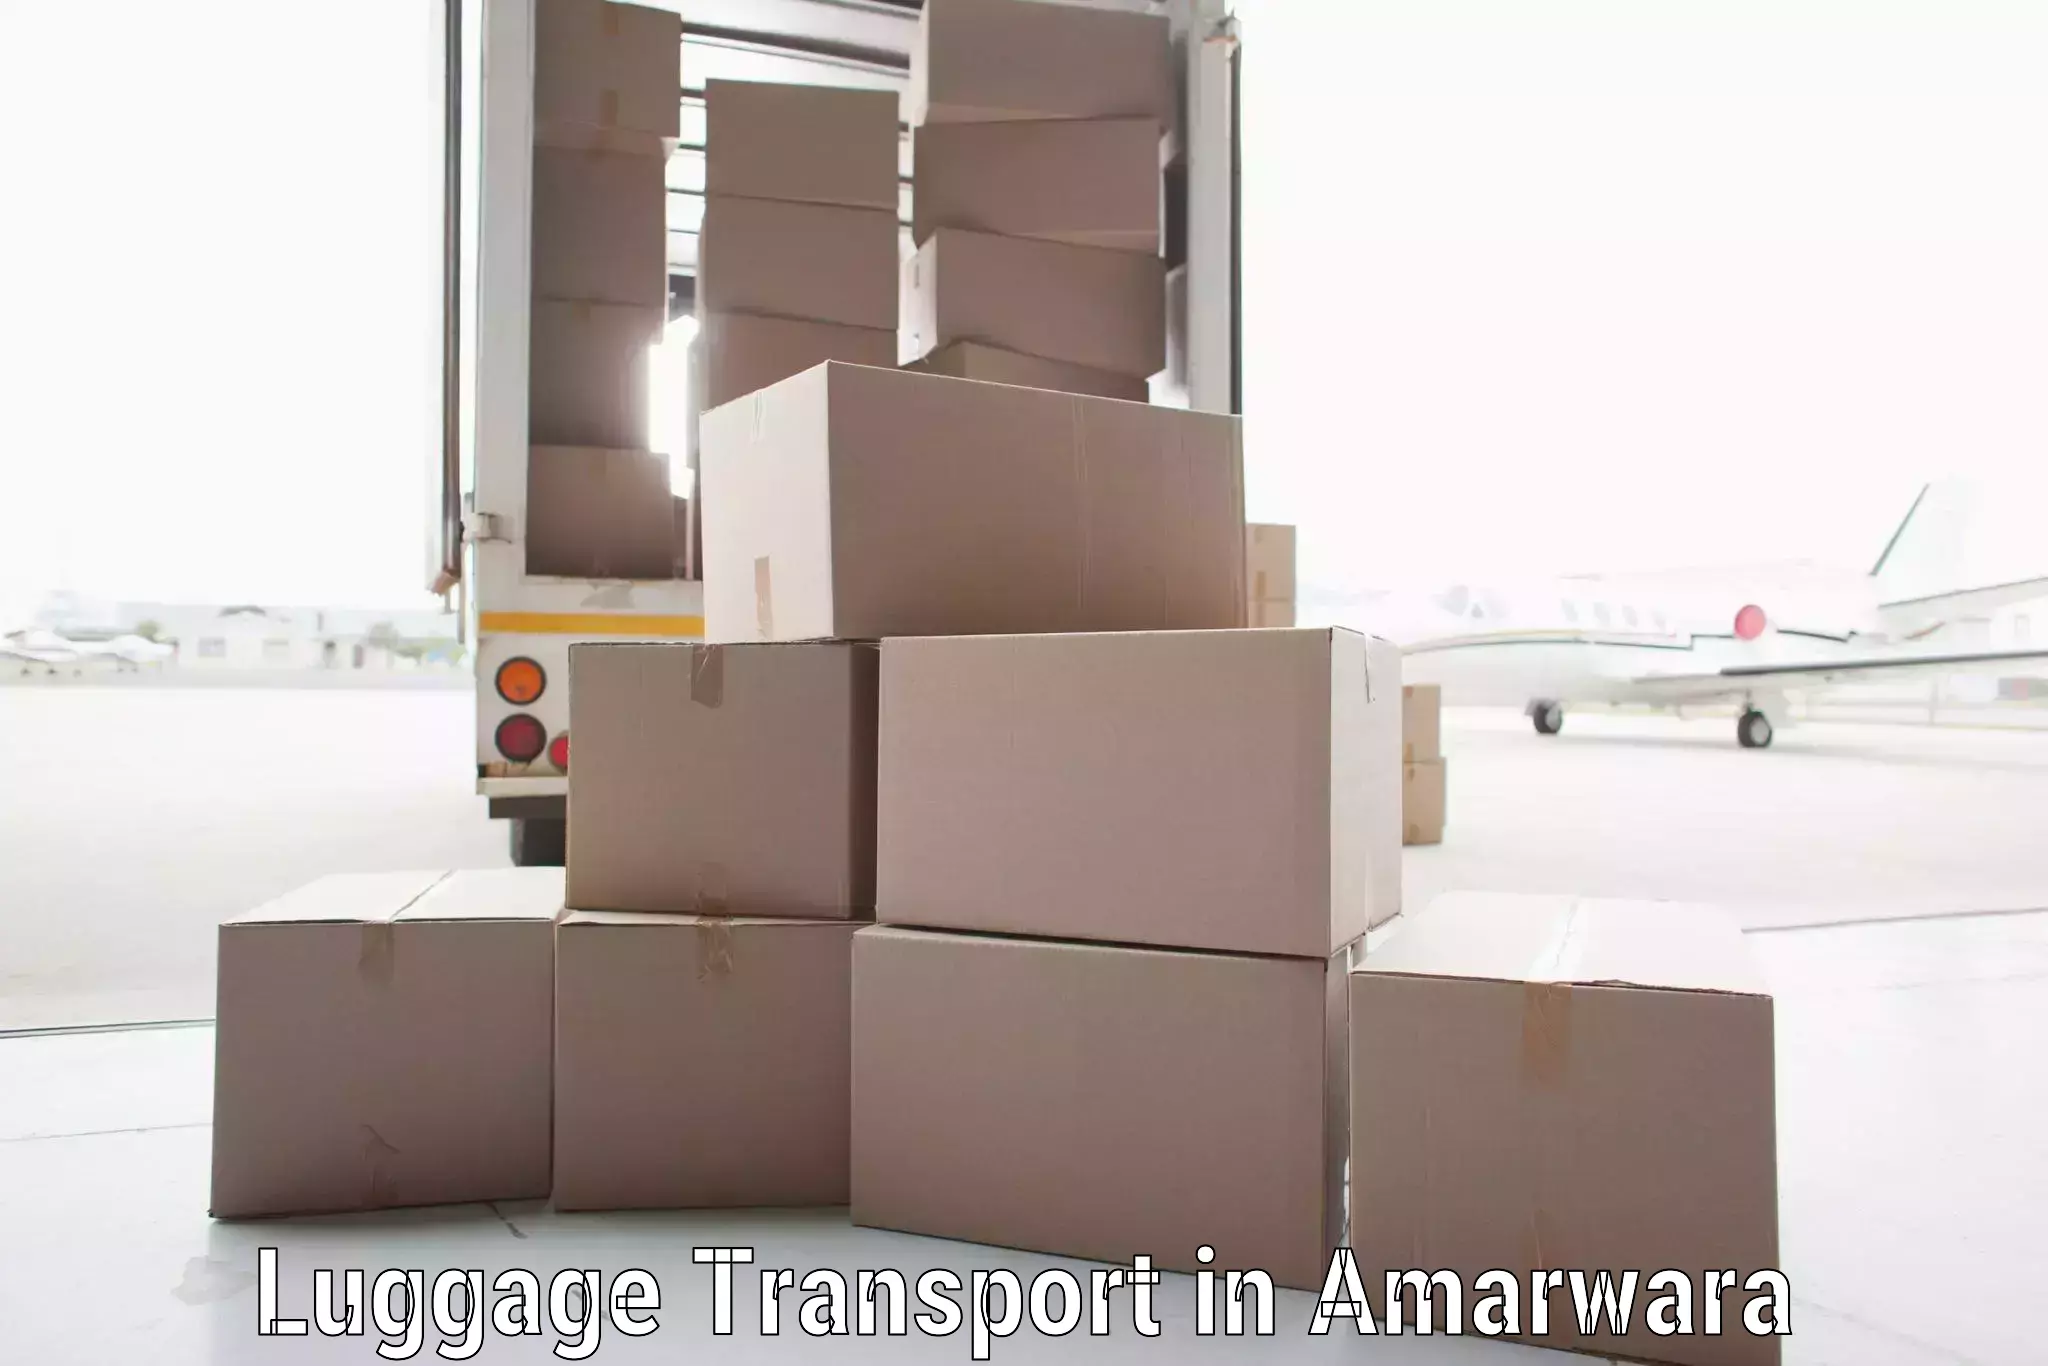 Luggage forwarding service in Amarwara